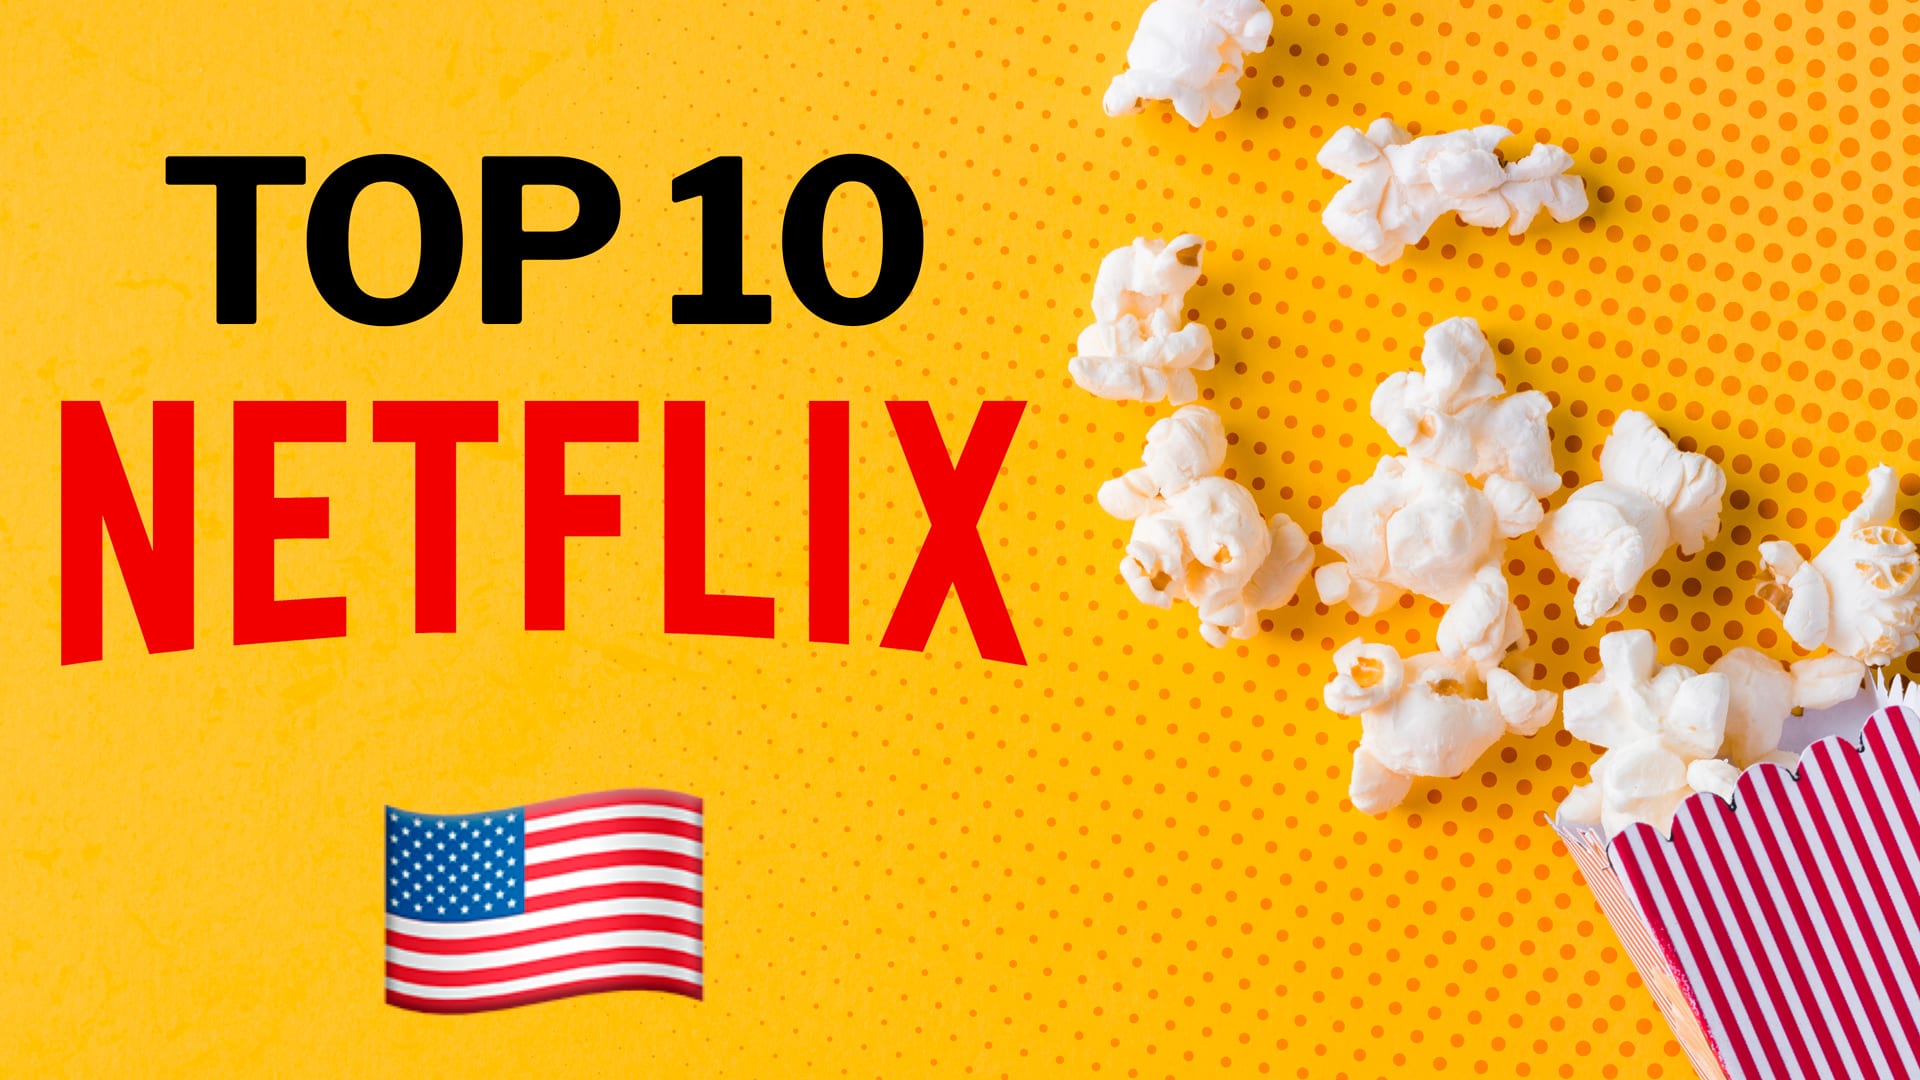 competirá con Netflix: ofrecerá películas y series gratis